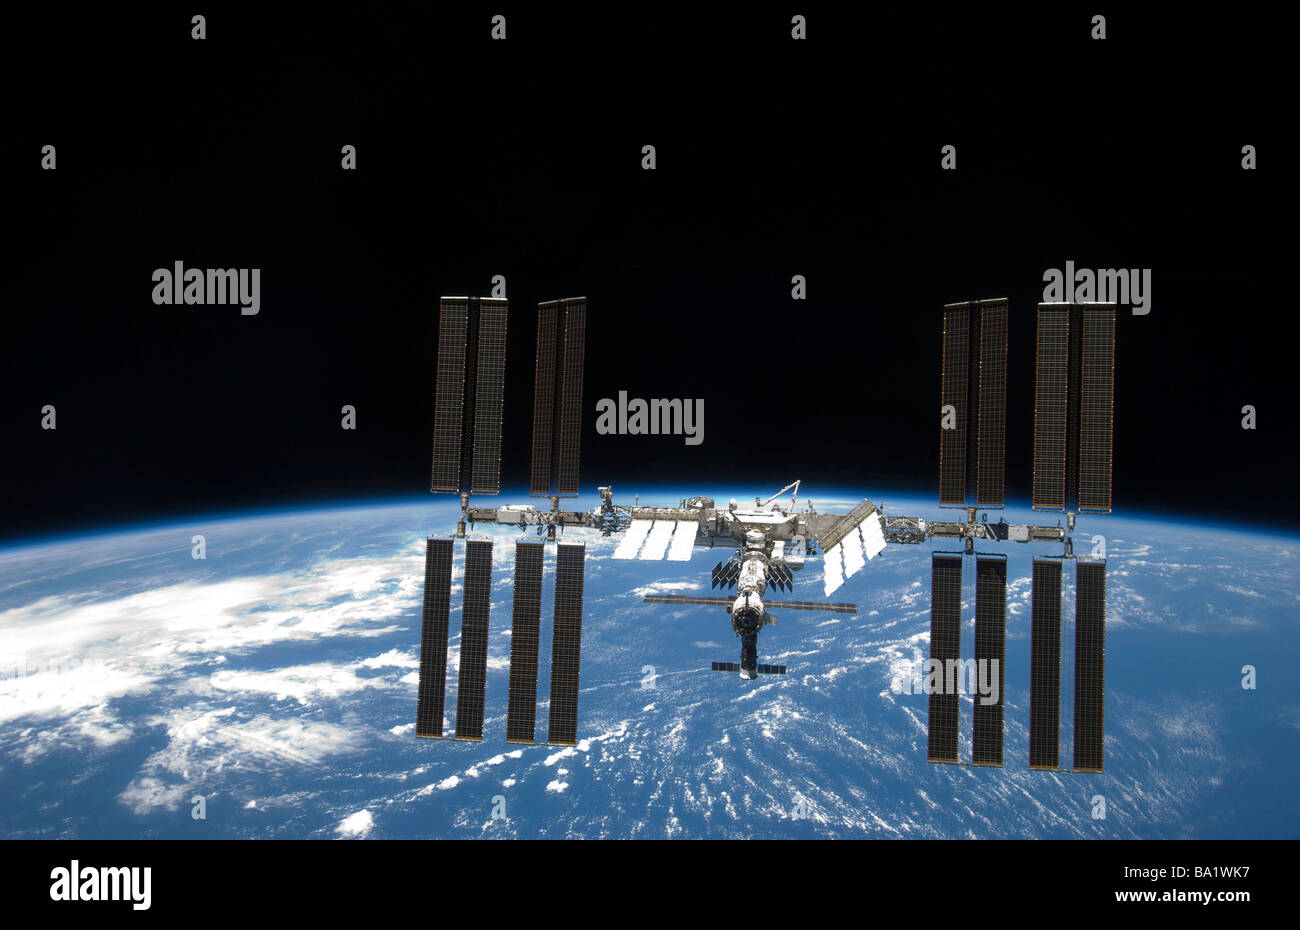 25 mars 2009 - La Station spatiale internationale, backdropped par la noirceur de l'espace et l'horizon de la Terre. Banque D'Images